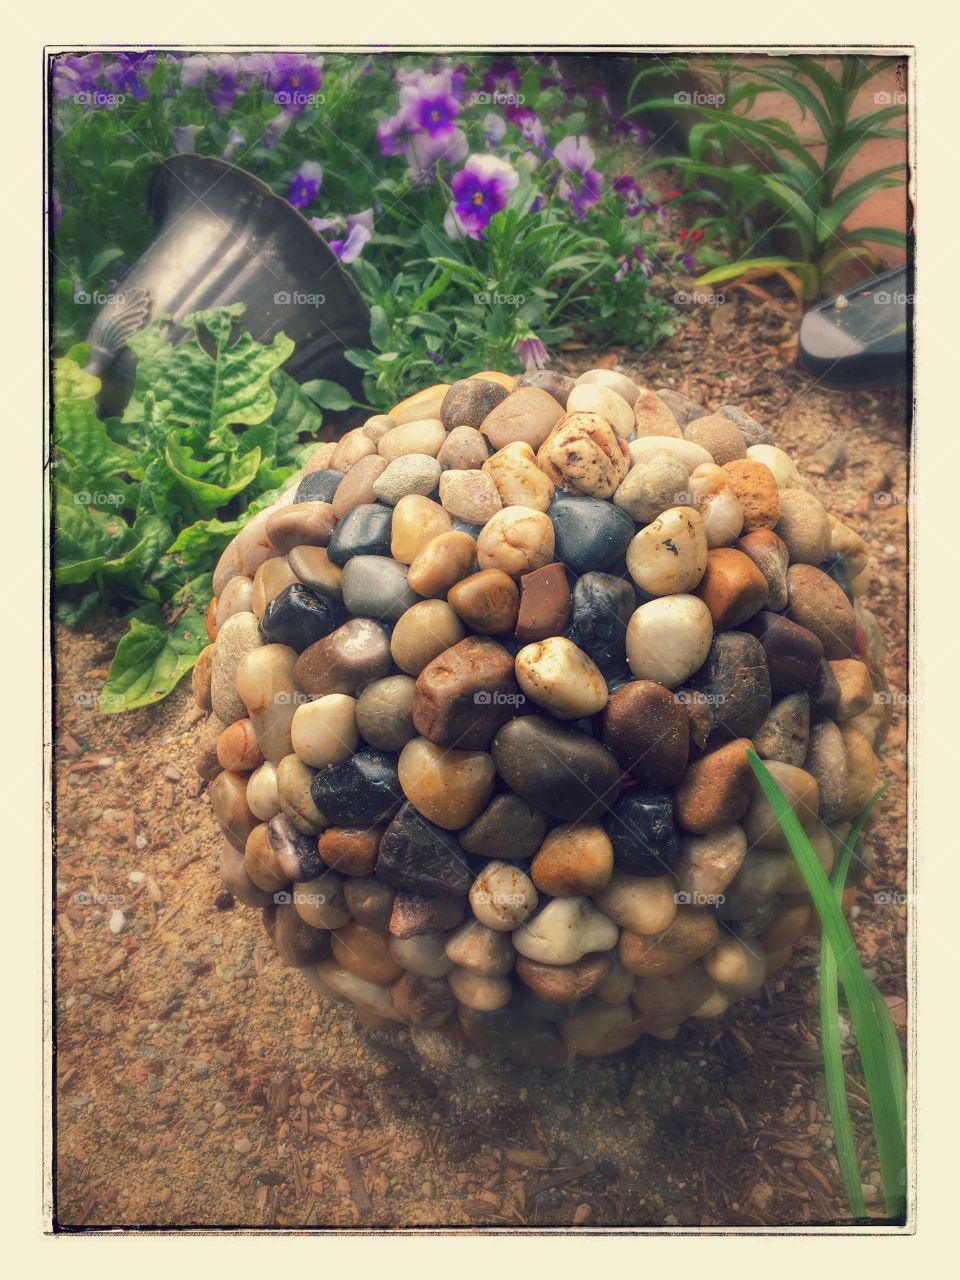 Stone garden ball